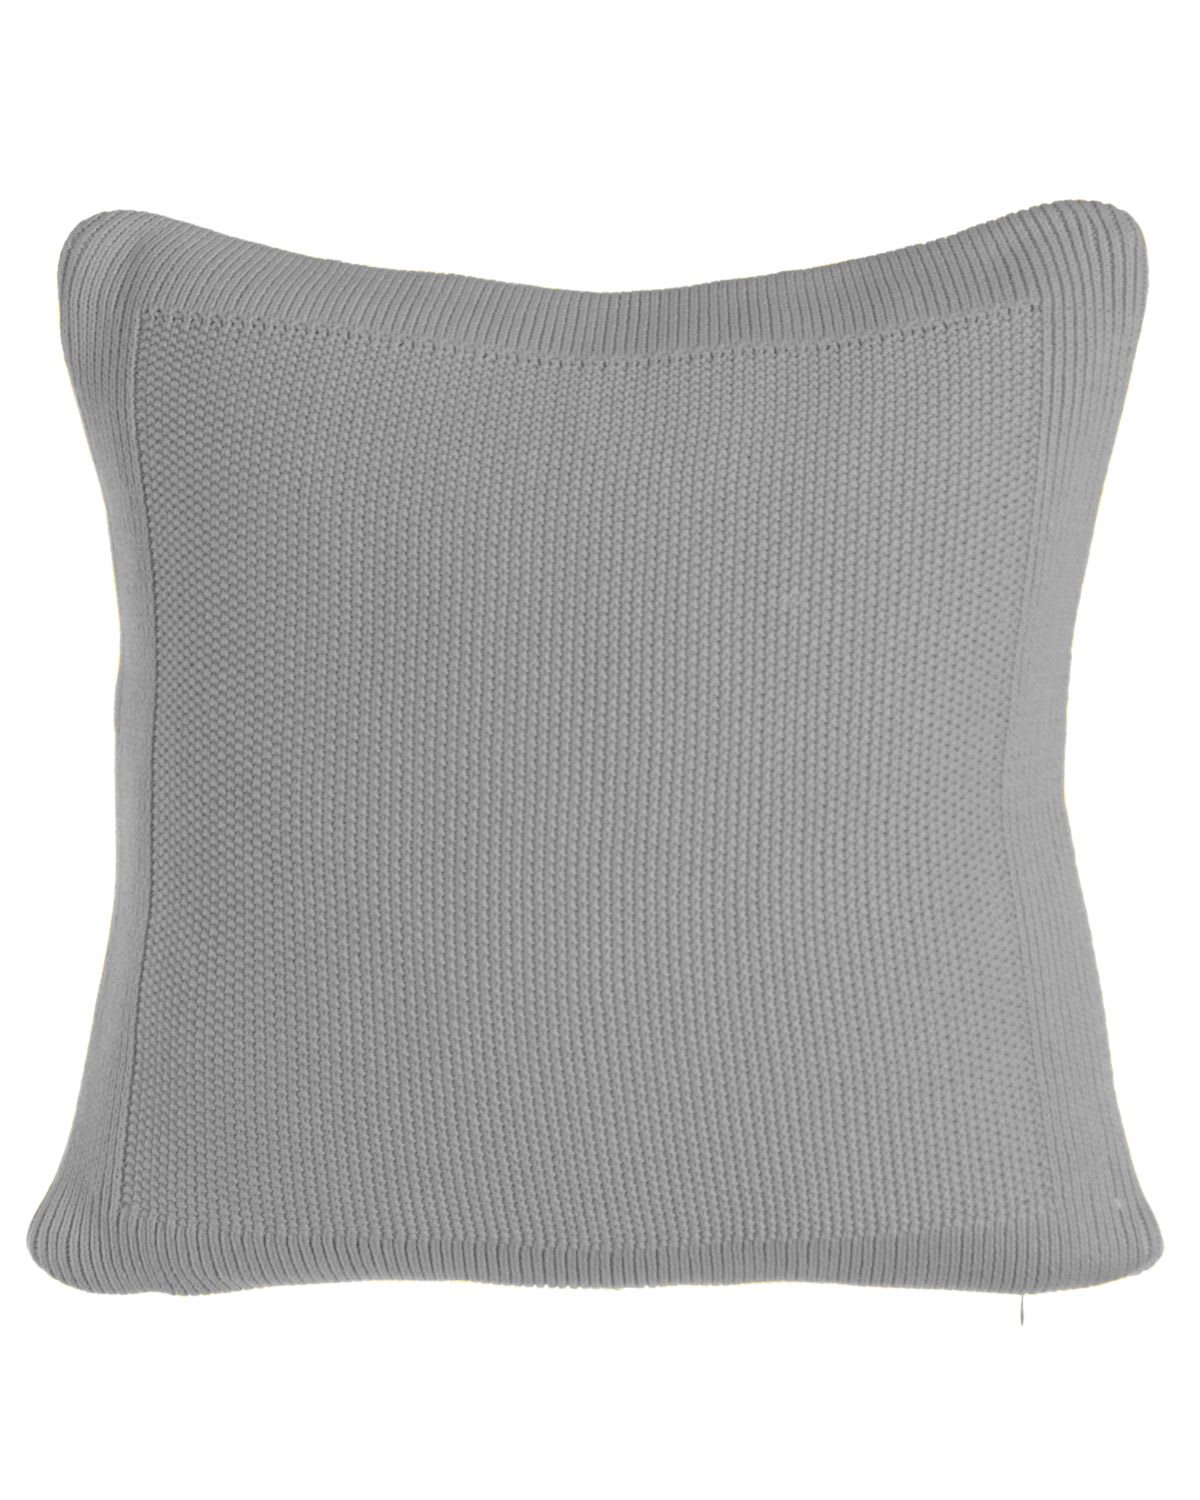 Image Ralph Lauren Home Palmer Boudoir Pillow, 12" x 16"